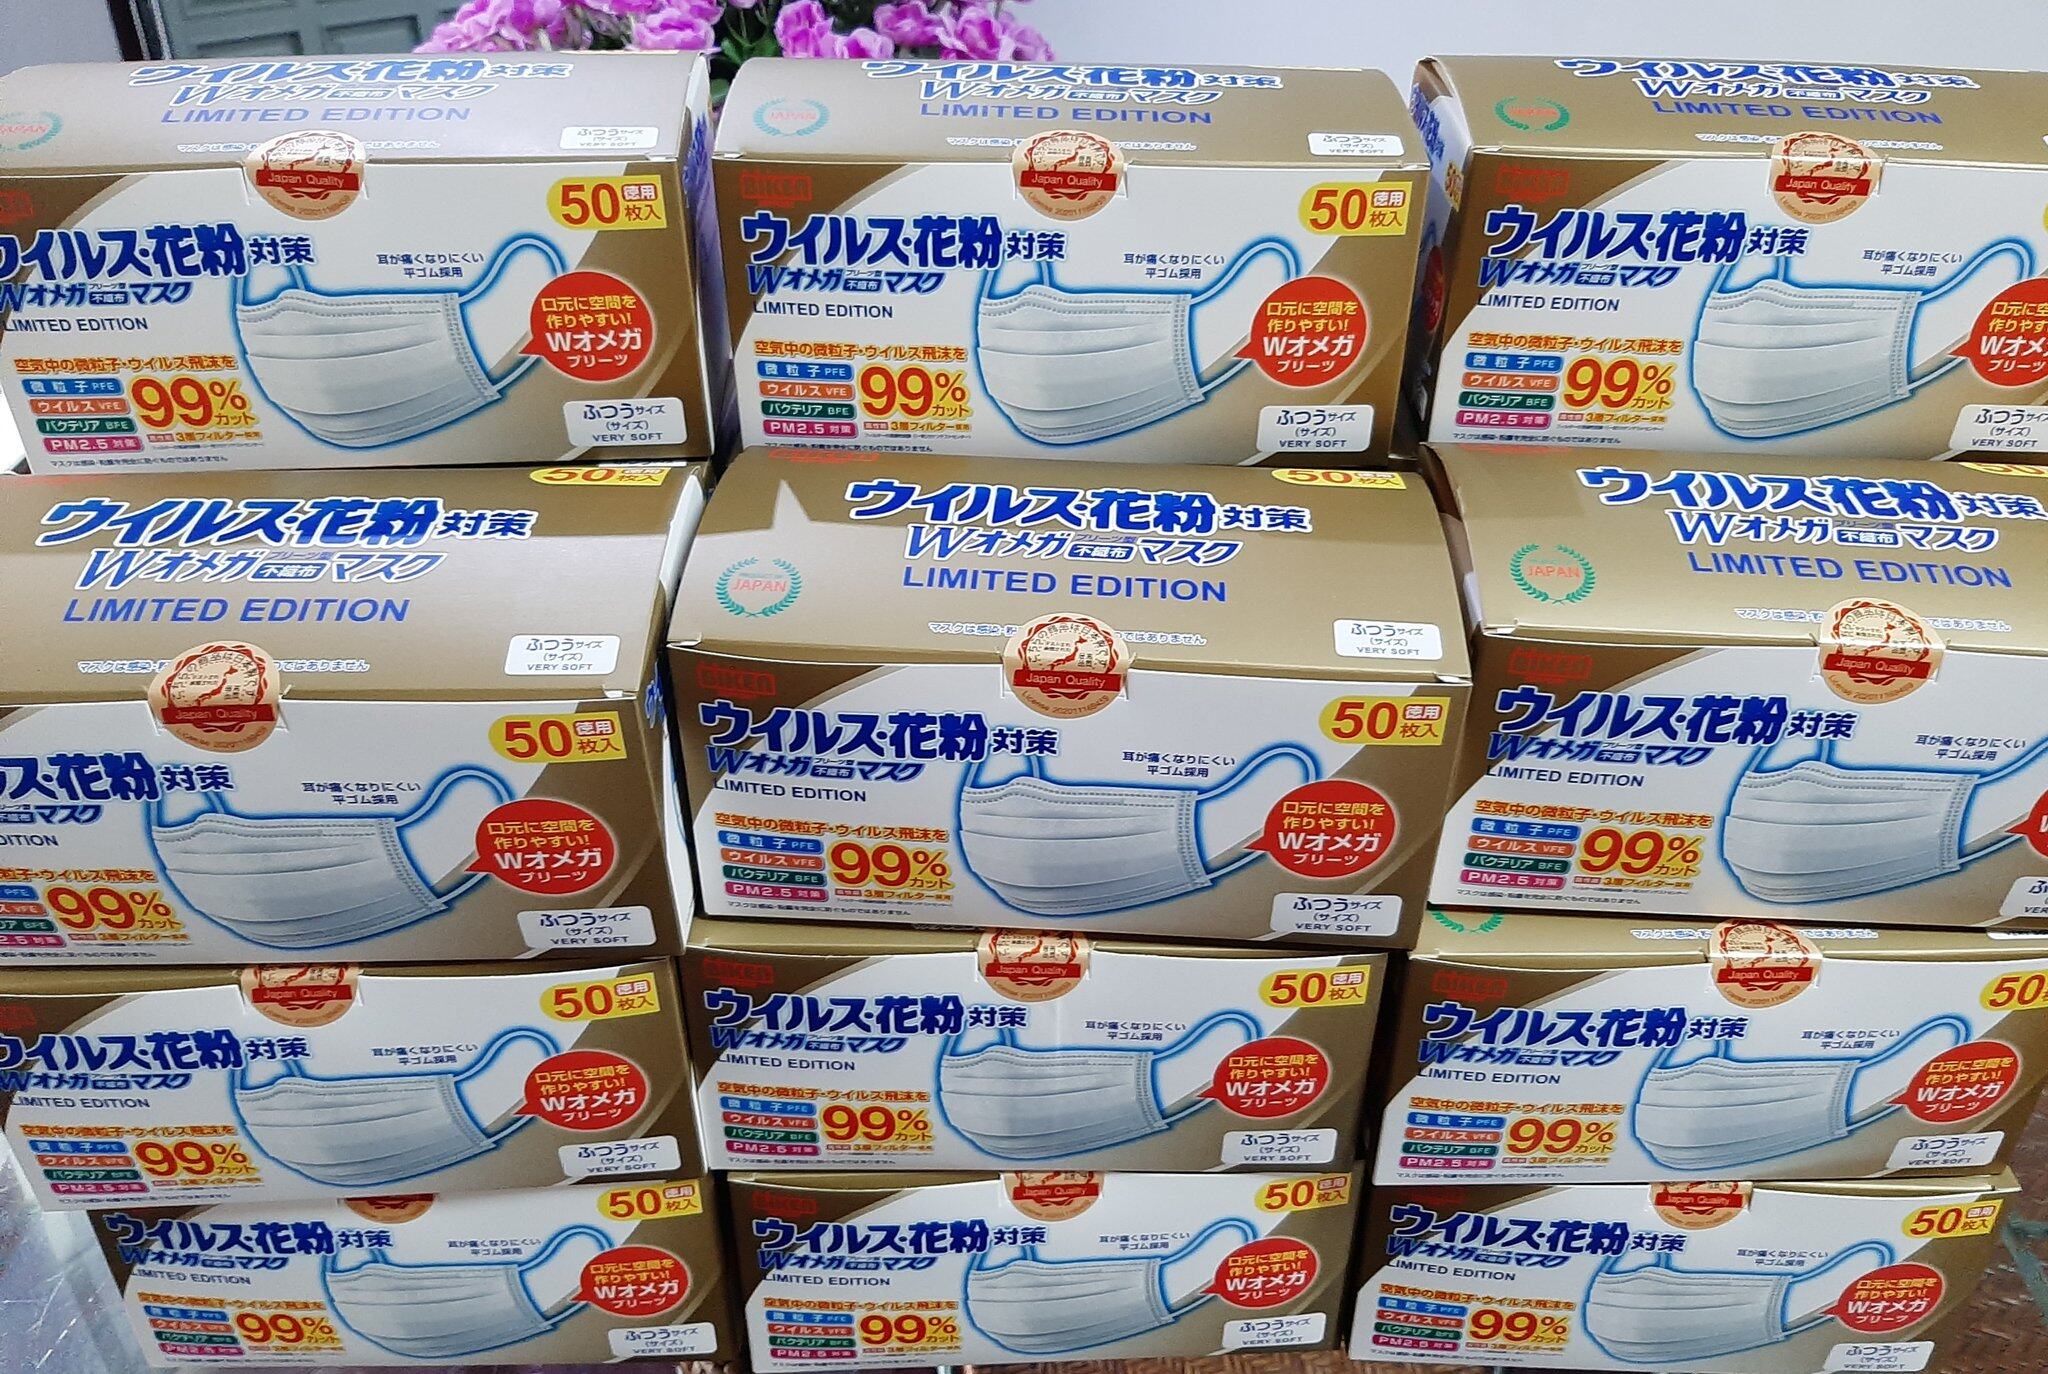 BIKEN หน้ากากอนามัยแบรนด์ญี่ปุ่น สีขาว หนา 3 ชั้น ของแท้มีปั๊ม Japan Quality พร้อมส่ง!!